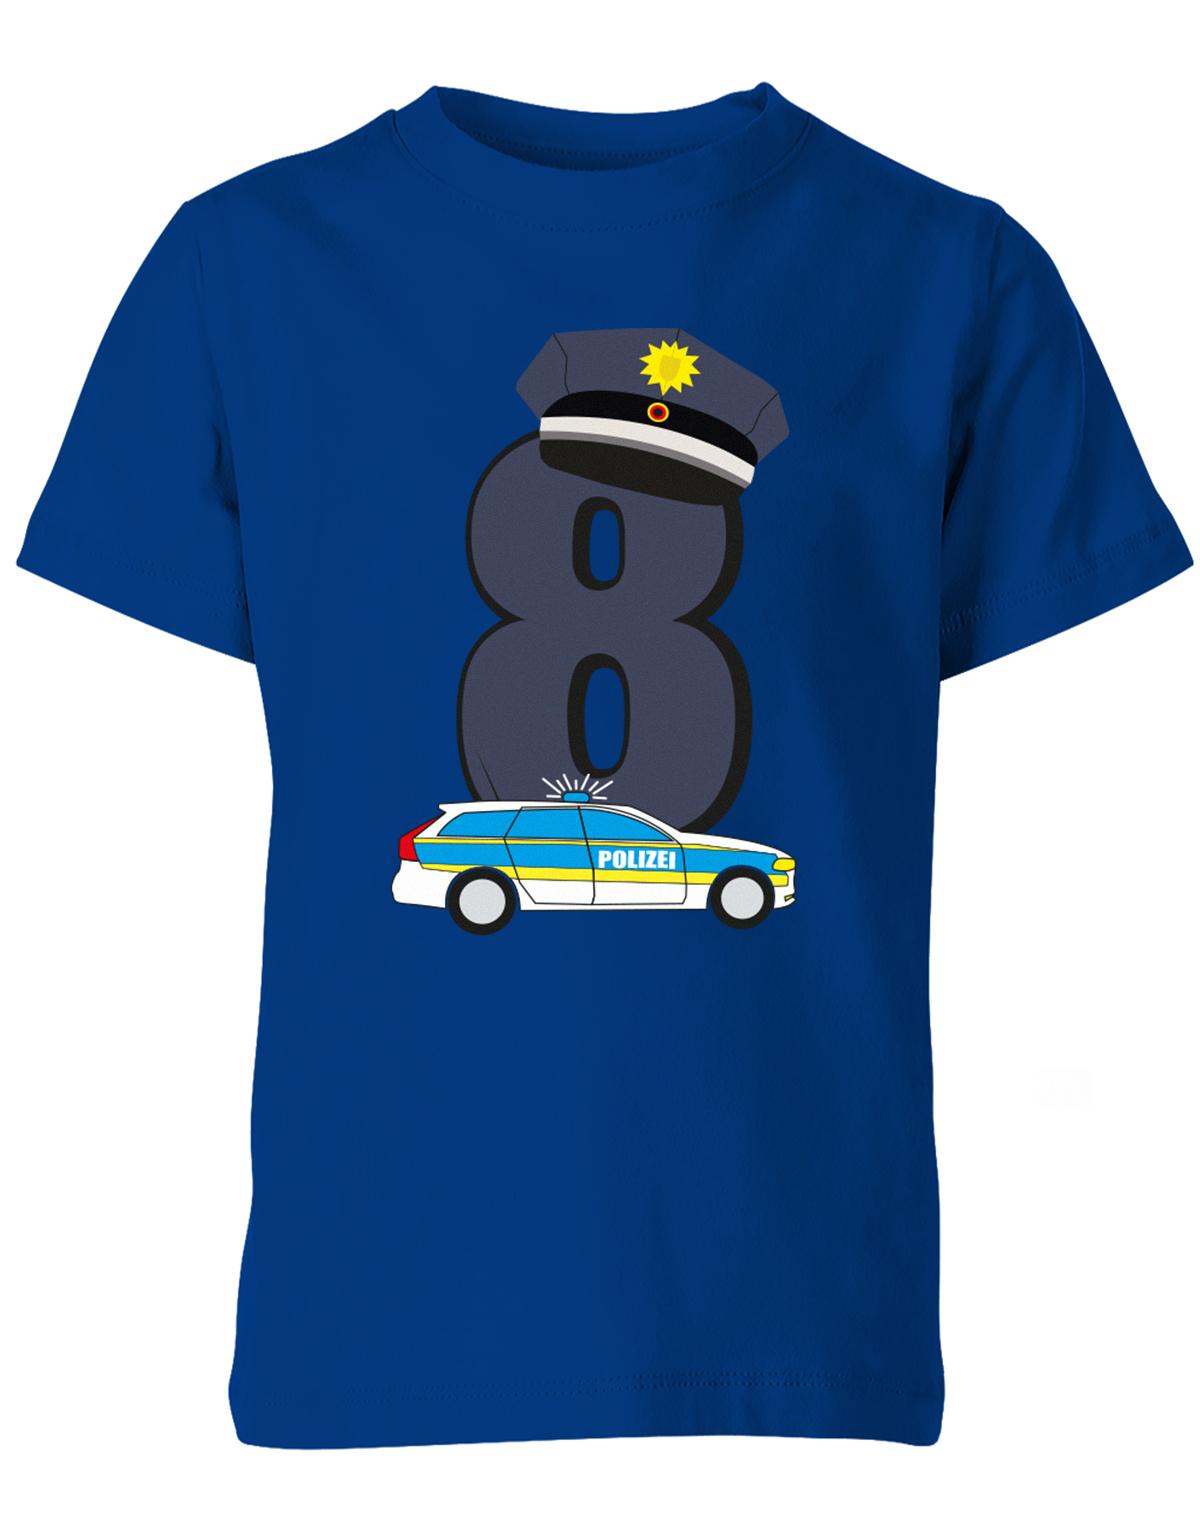 ich-bin-8-polizei-geburtstag-kinder-shirt-royalblau